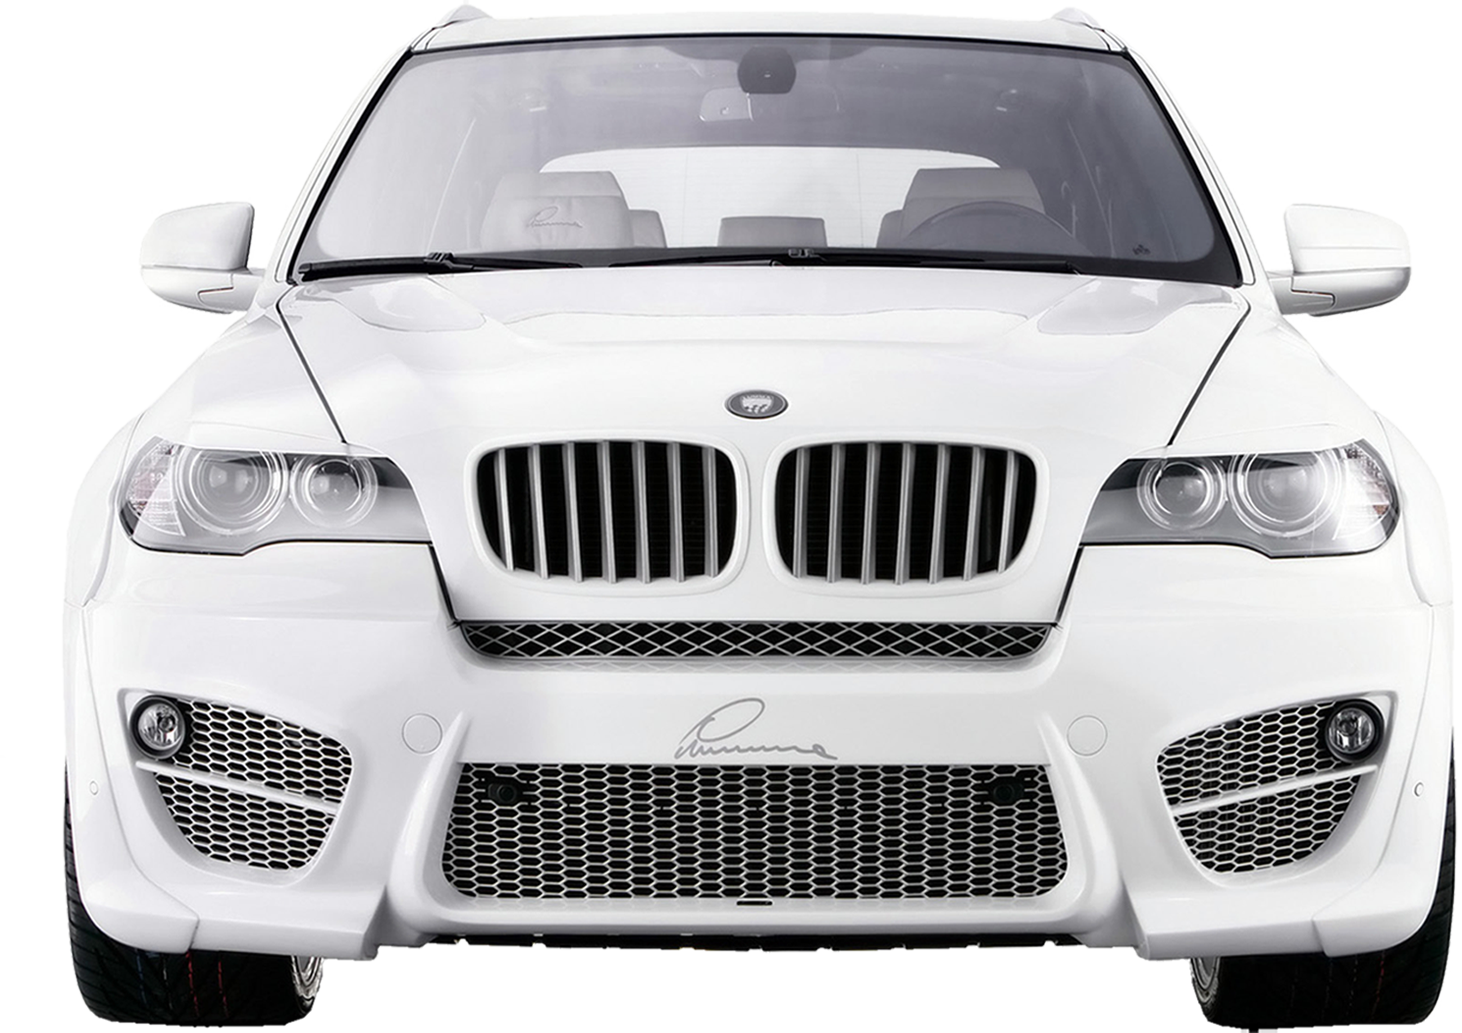 BMW PNG image, free download